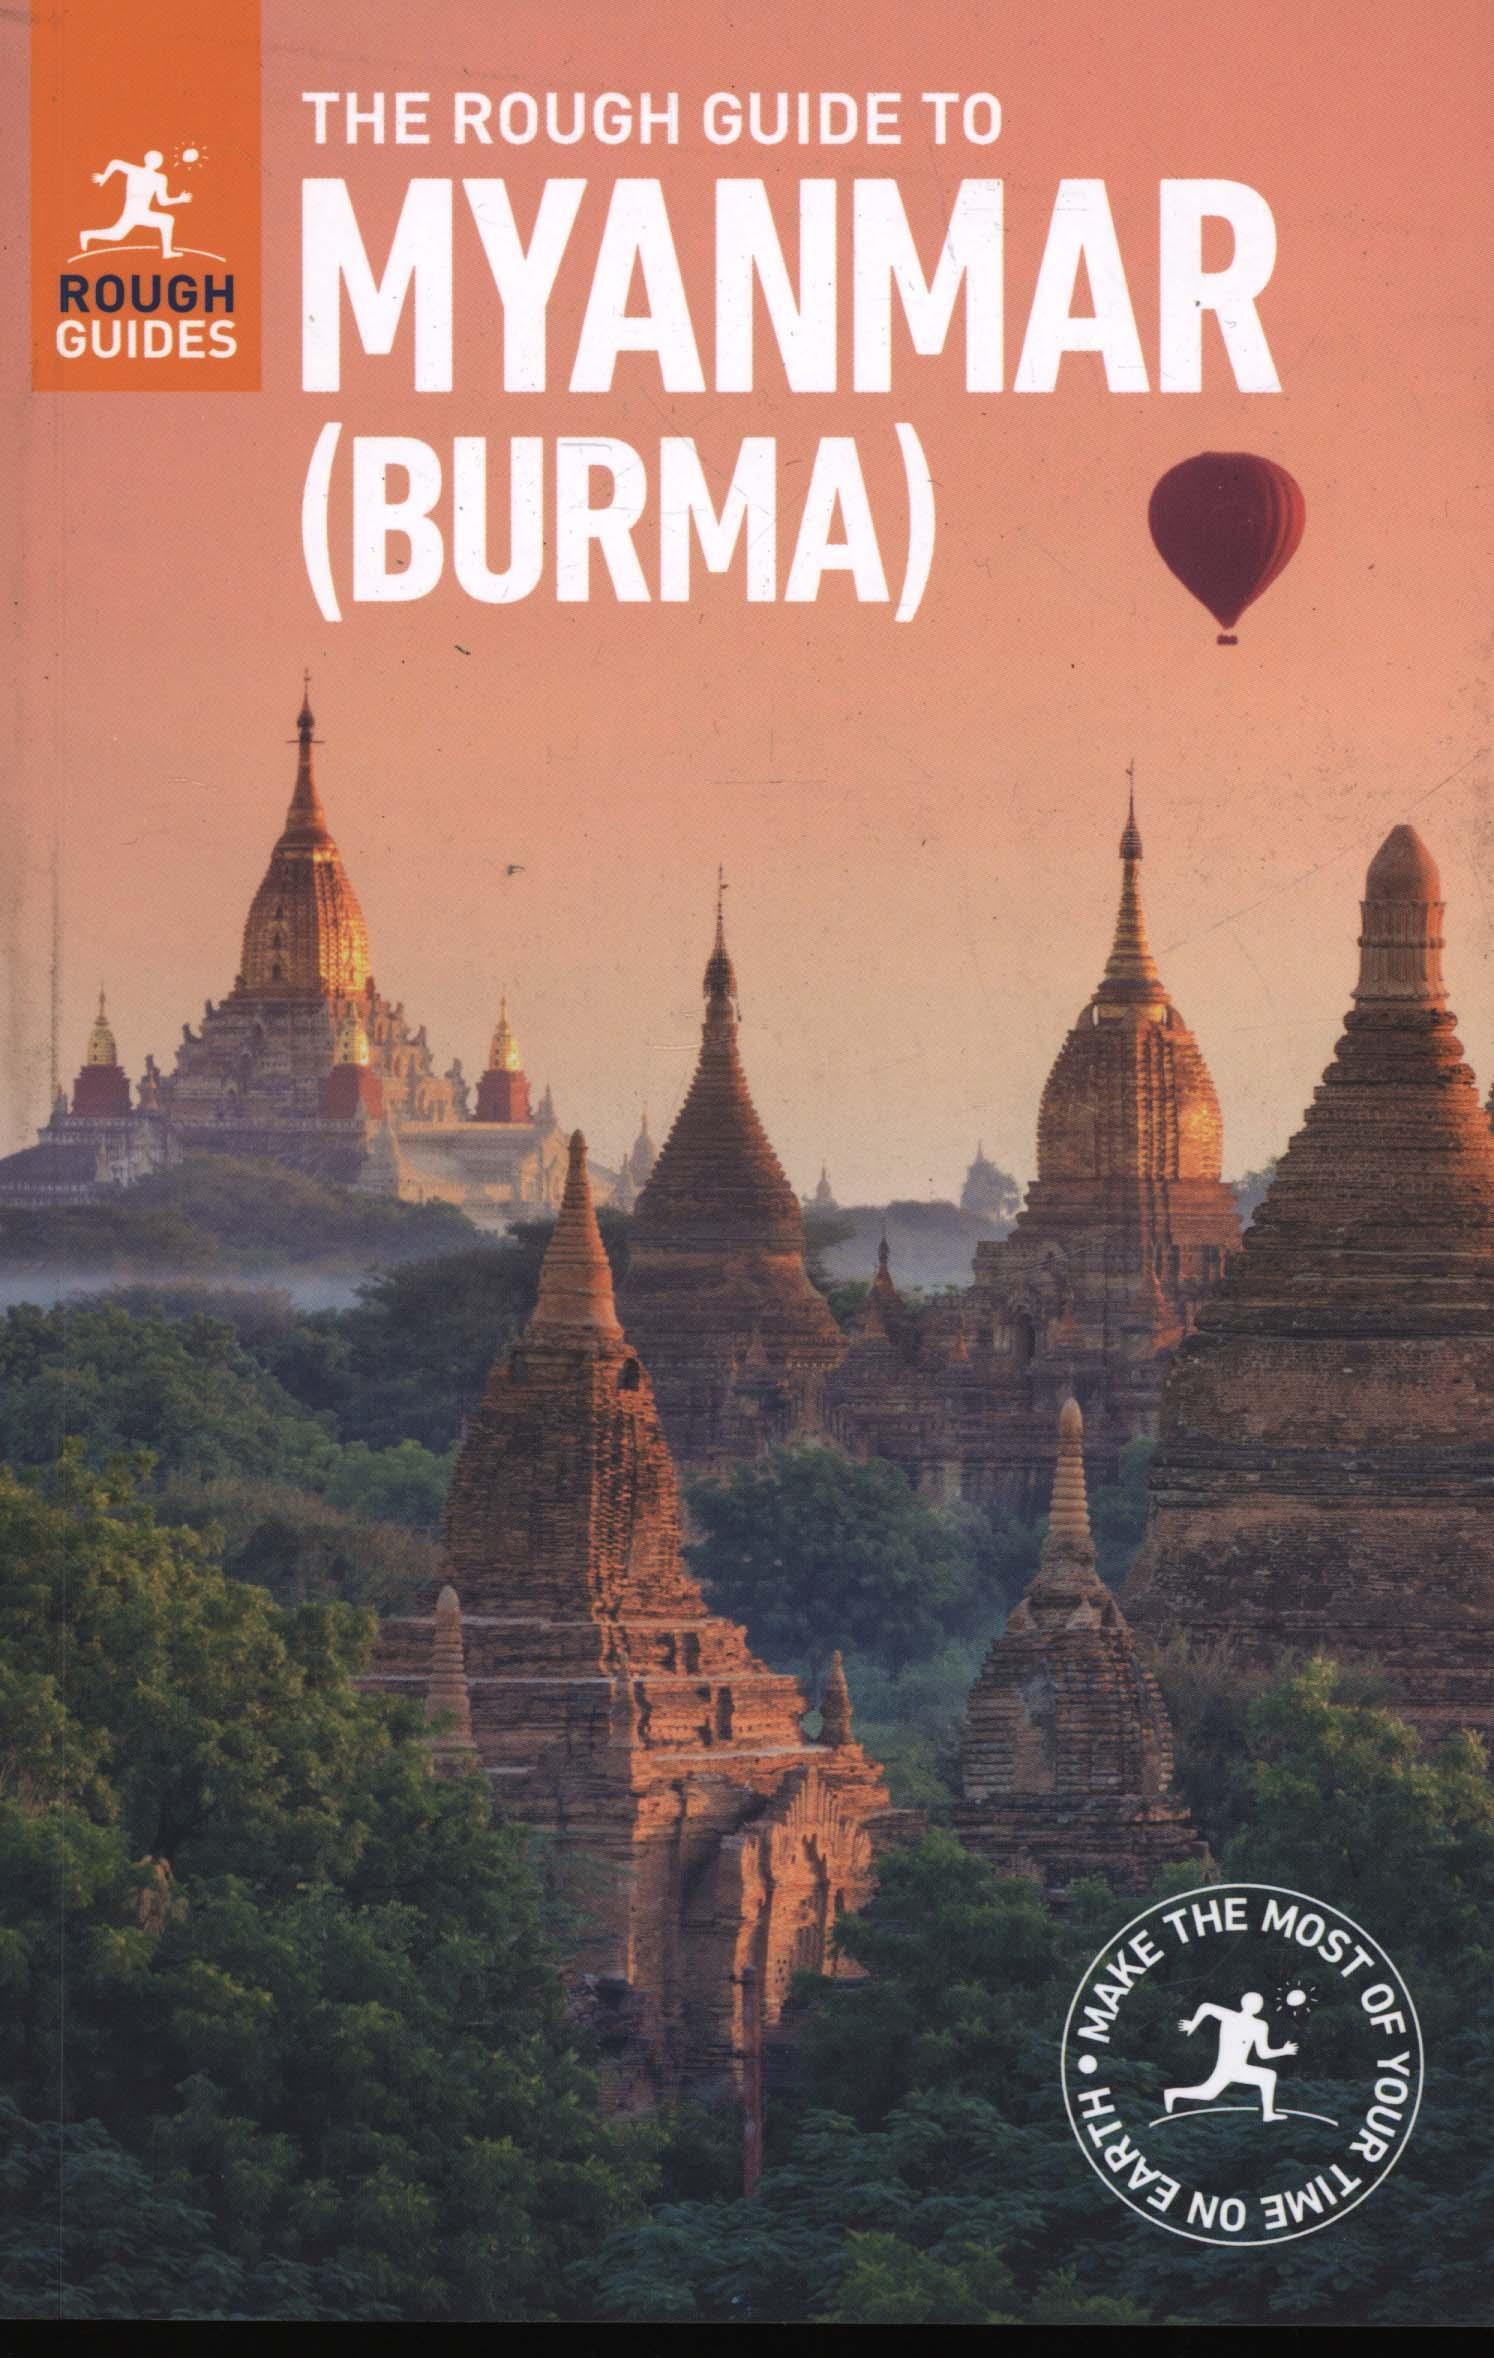 Rough Guide to Myanmar (Burma)